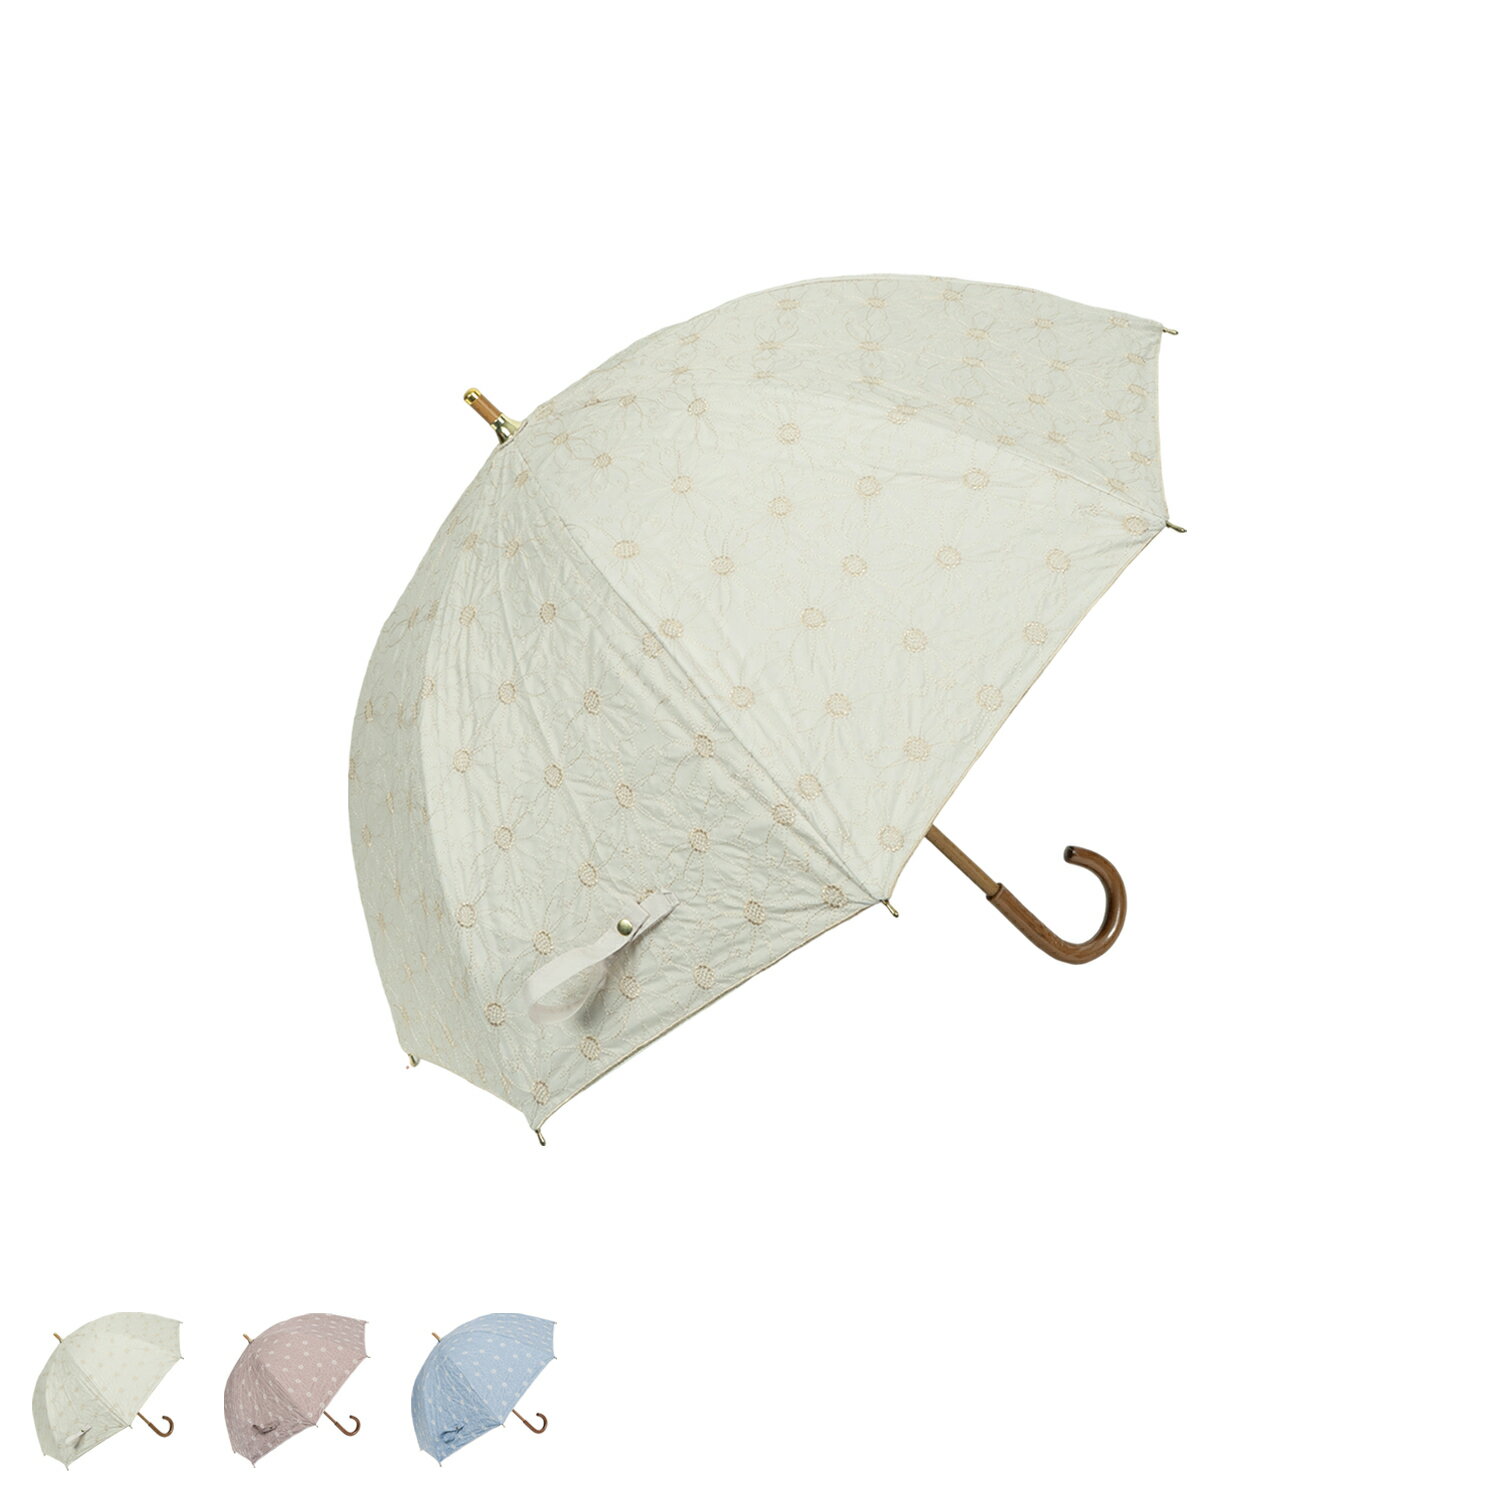 ピンクトリック pinktrick デイジー ピンクトリック 日傘 完全遮光 長傘 軽量 晴雨兼用 雨傘 レディース 50cm 遮光率100% UVカット 紫外線対策 遮熱 母の日